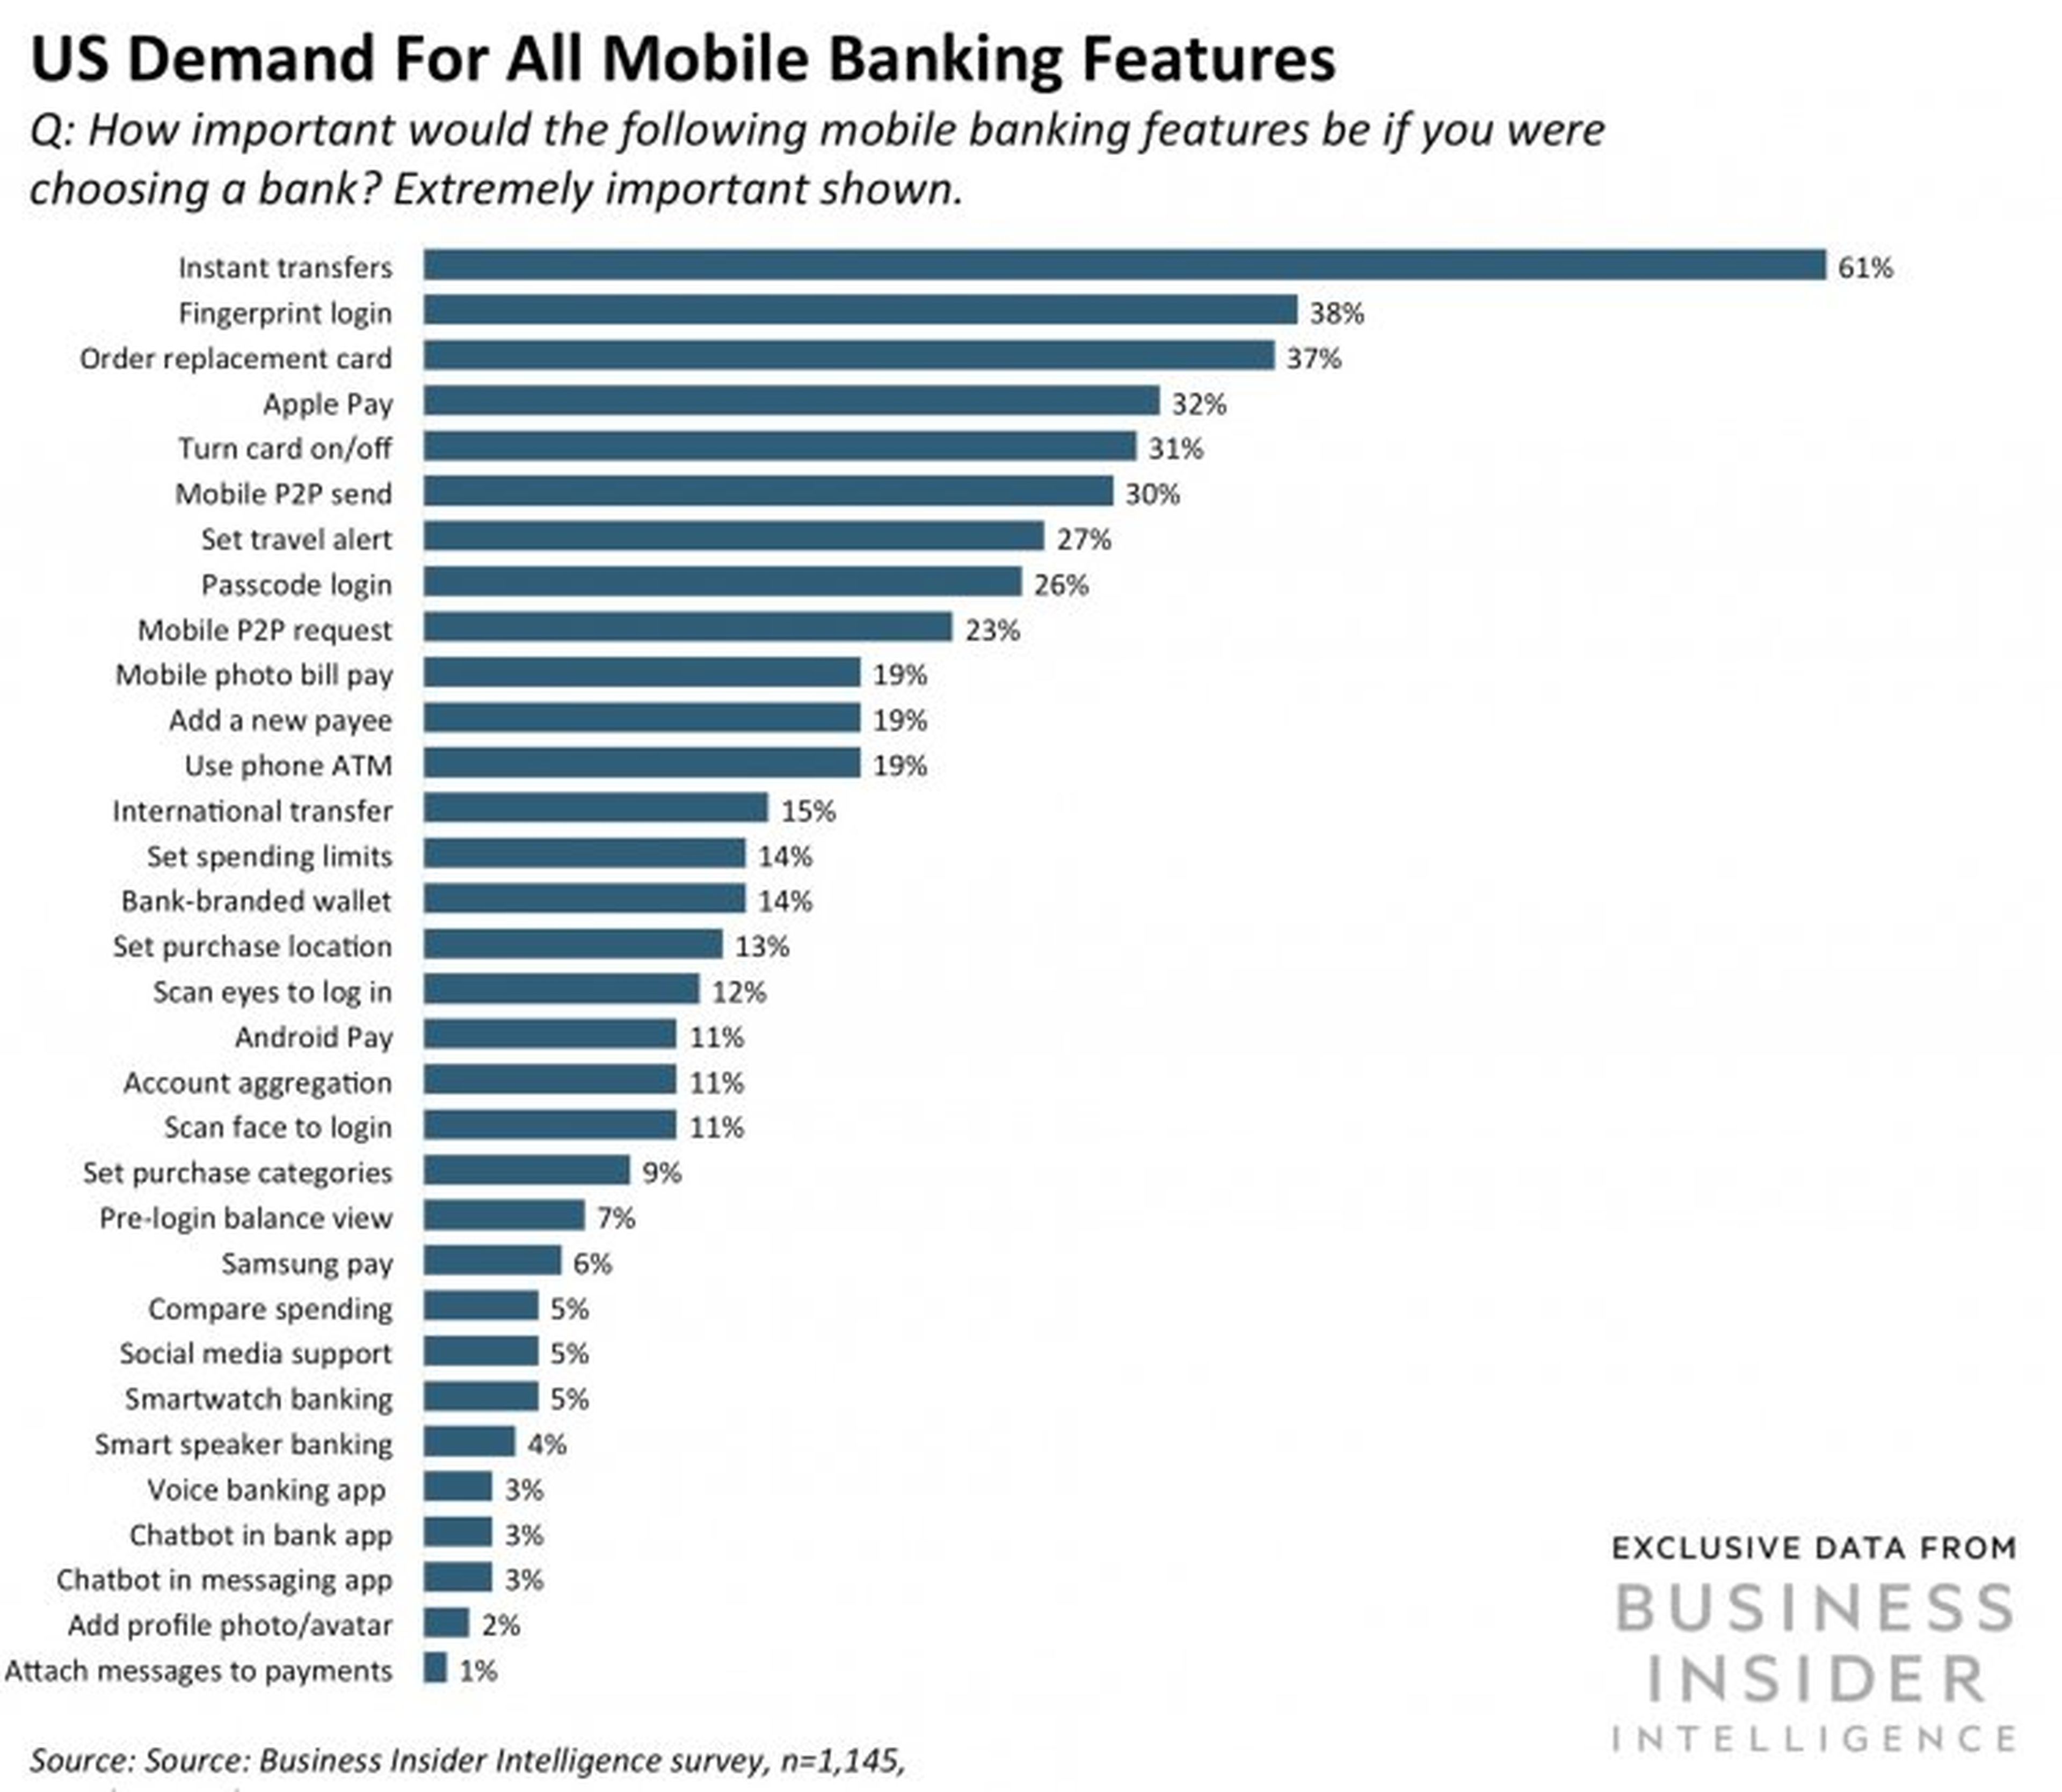 Demanda de características de app de banca móvil en EE.UU: ¿Cómo de importante son las siguientes características de su servicio móvil a la hora de elegir un banco?